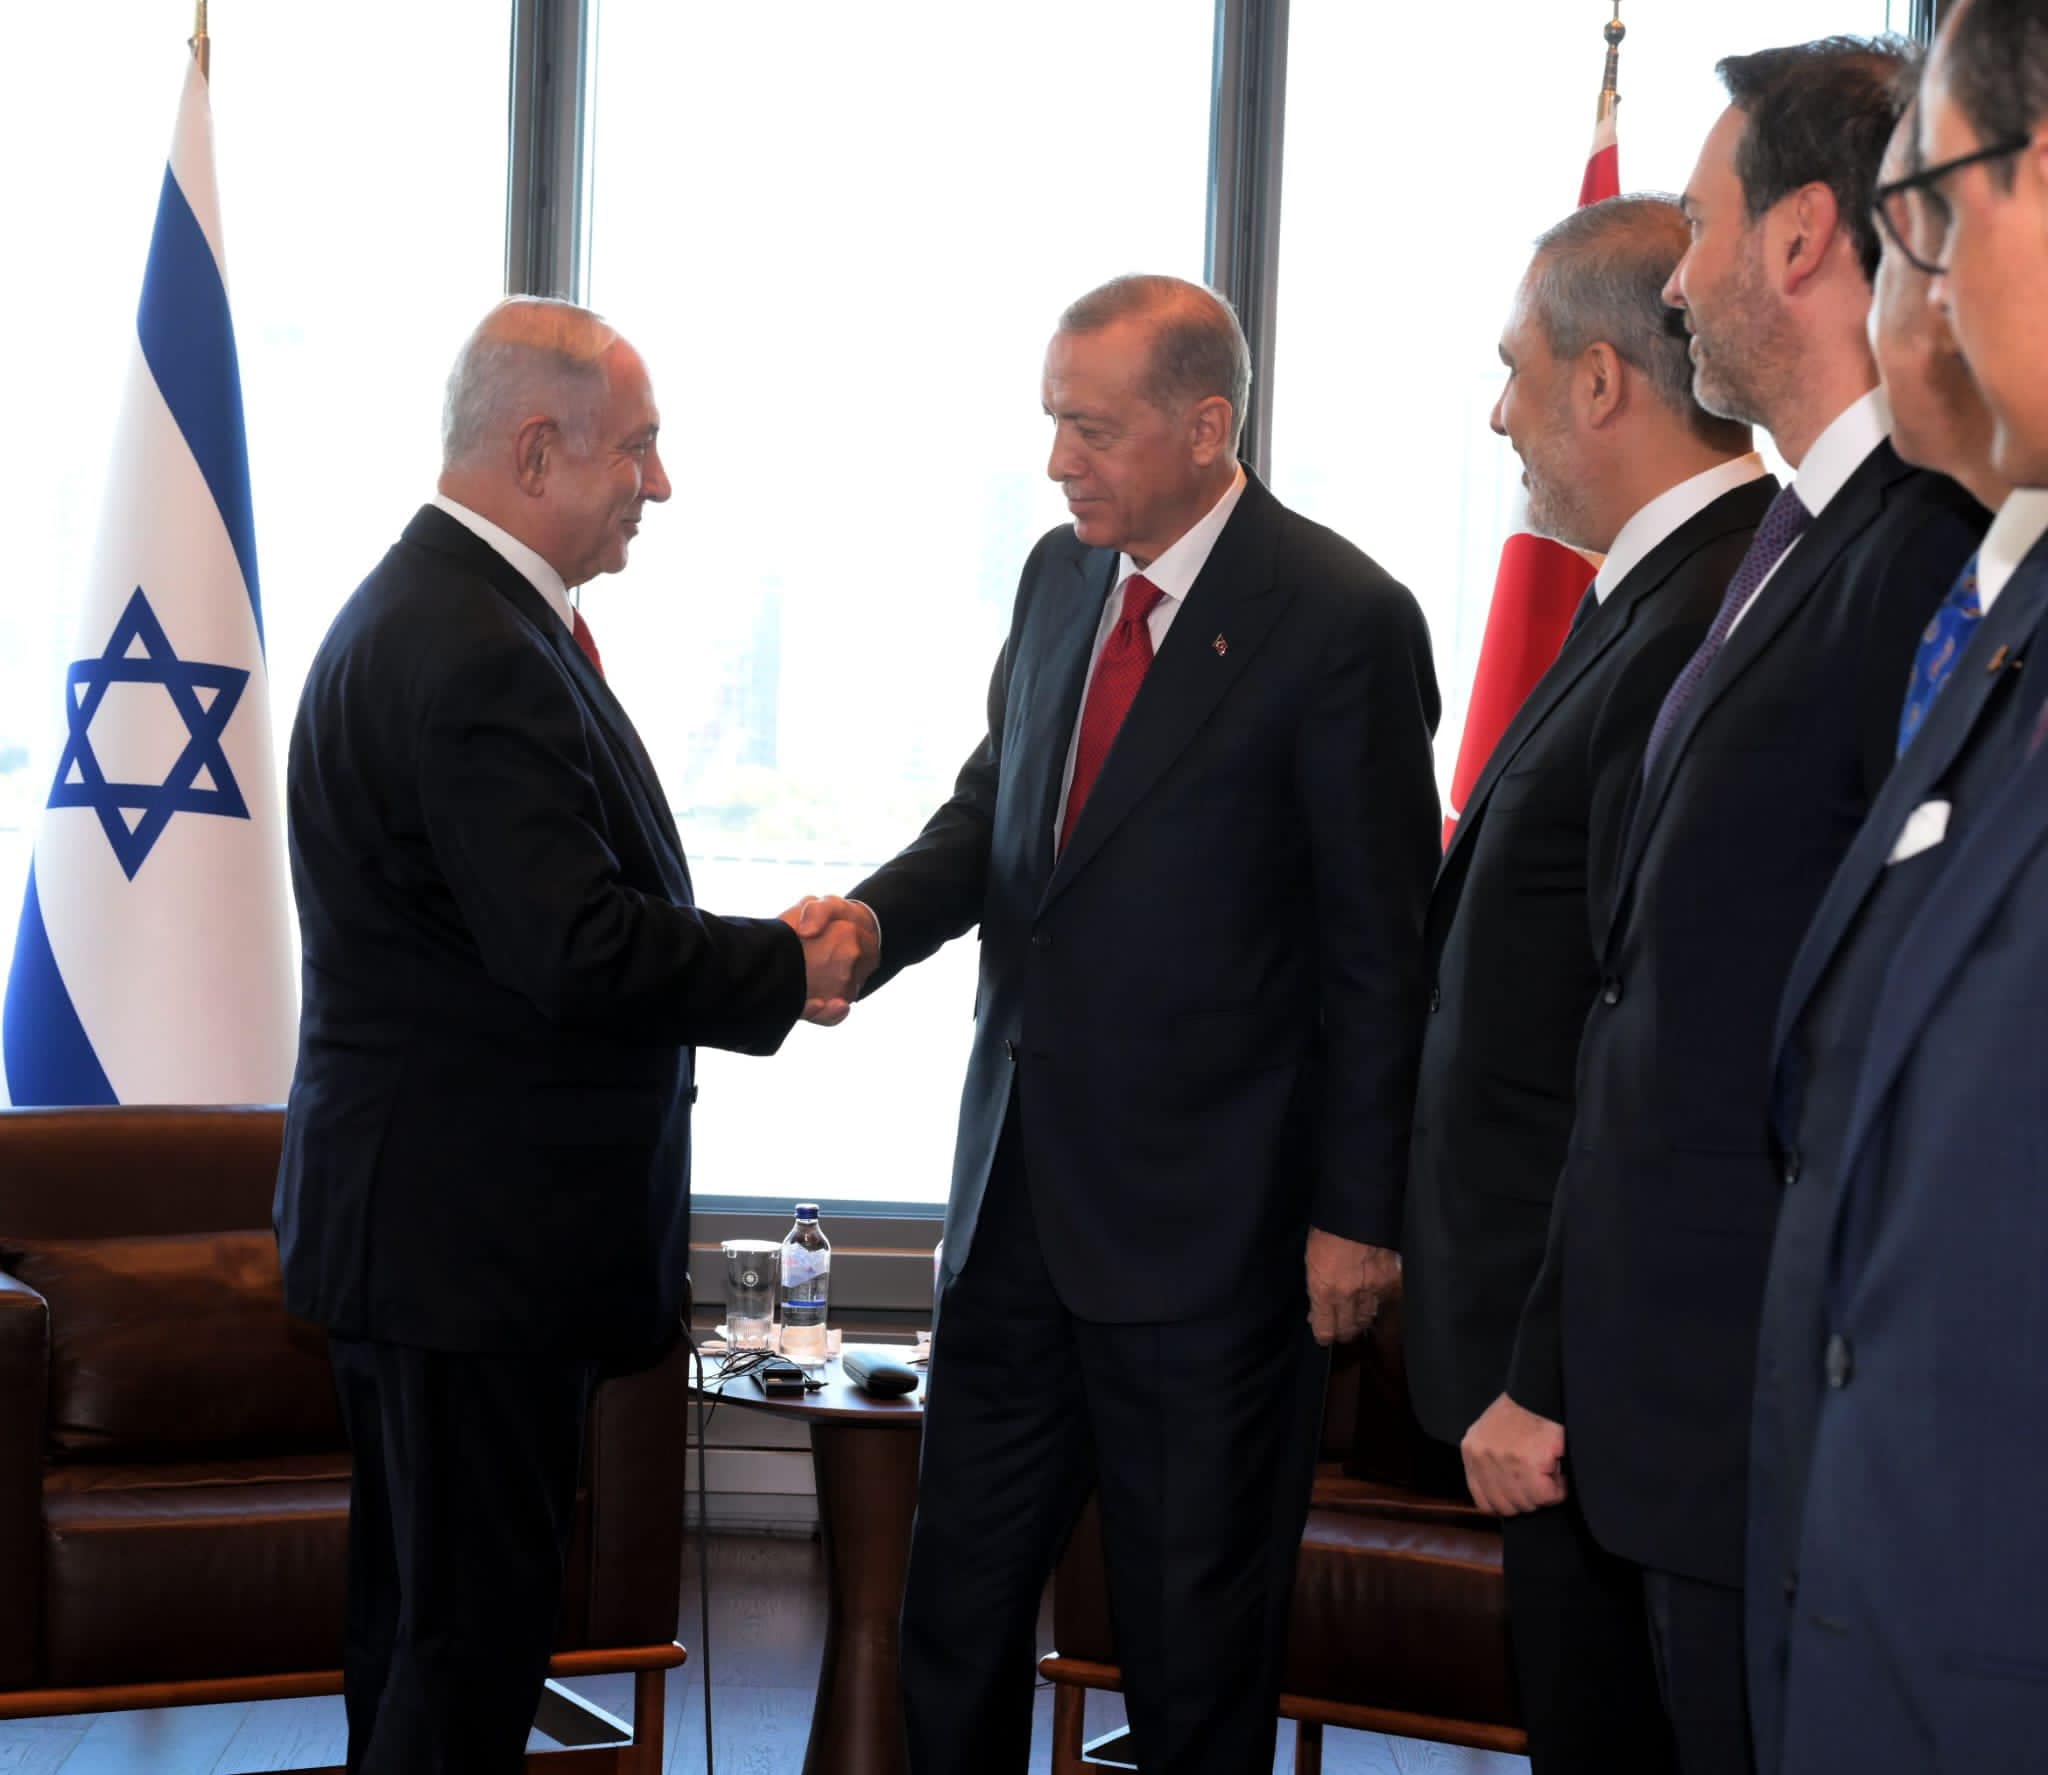 Benjamin Netanyahu dhe Recep Taip Erdogan, Izrael - Turqi. Foto nga Benjamin Netanyahu (Facebook)